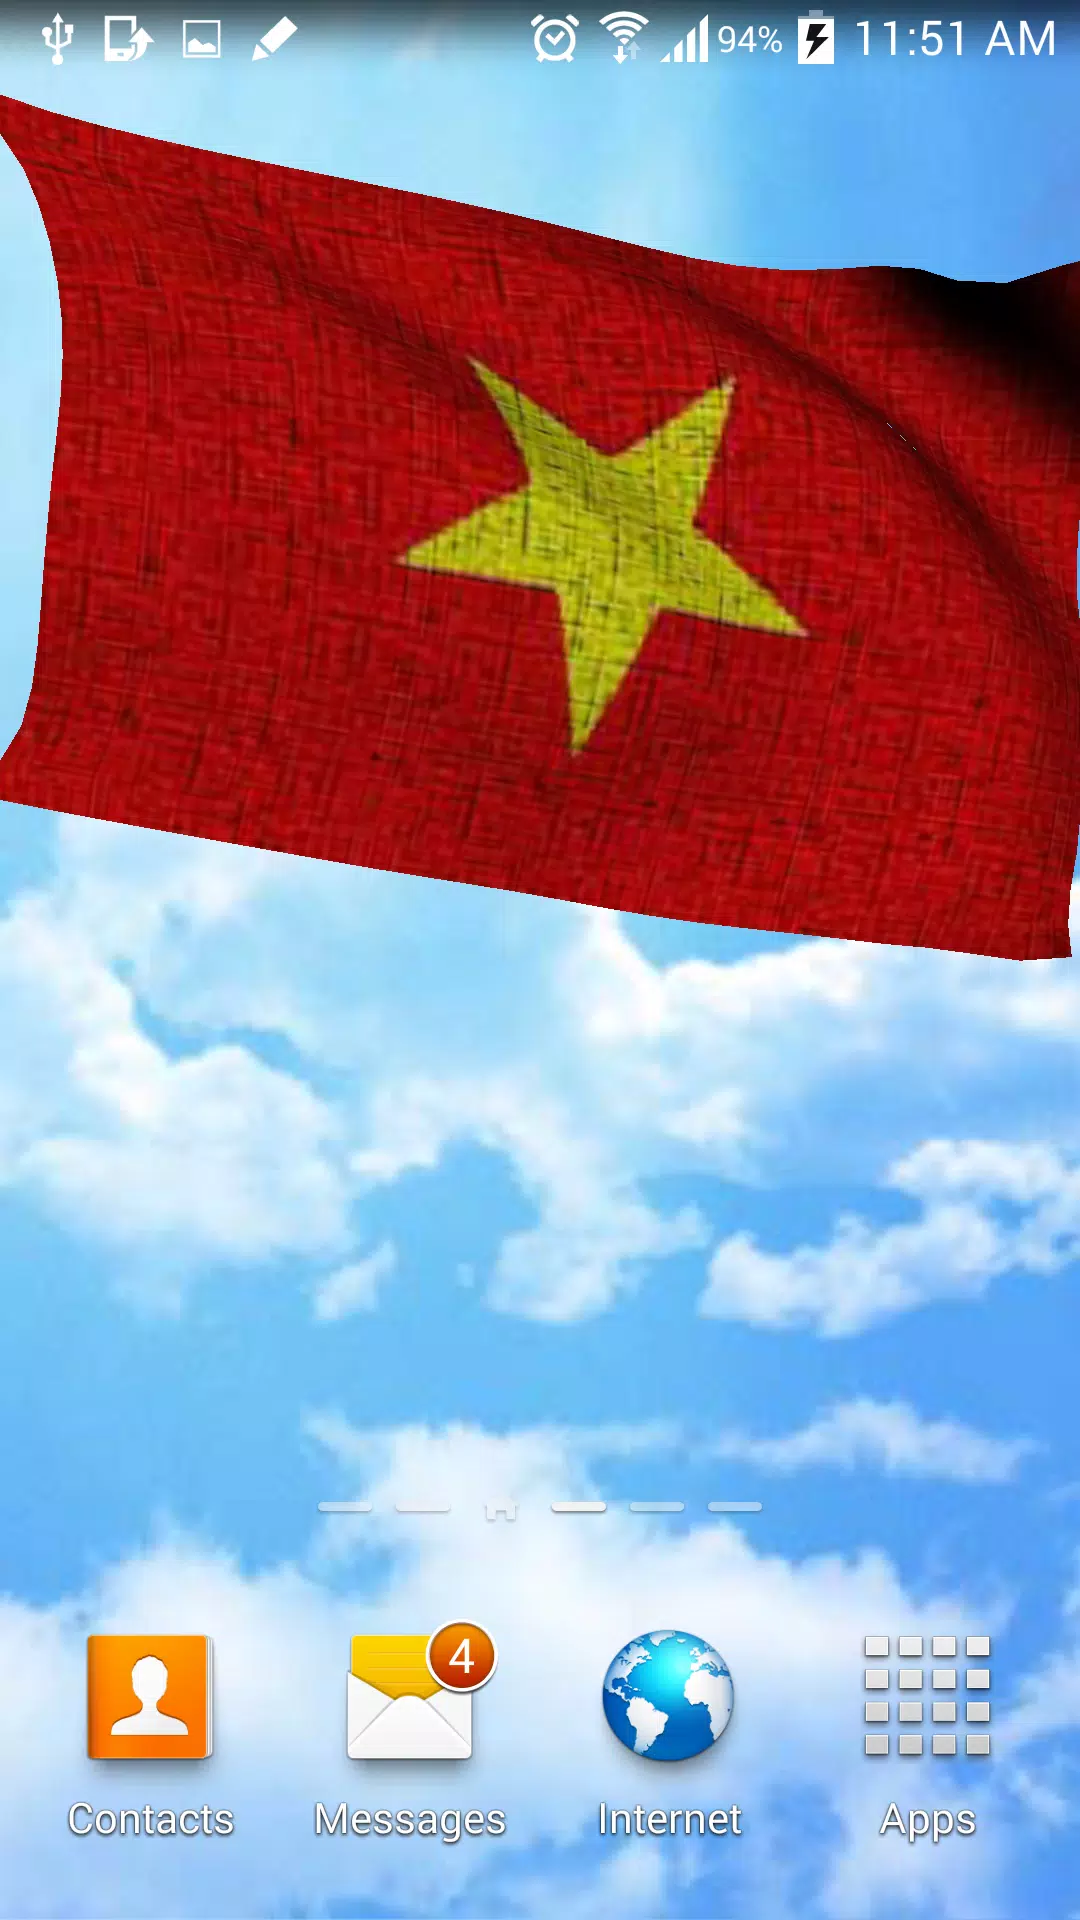 Lá cờ Việt Nam 3D là một phụ kiện ngoại thất ô tô độc đáo và đầy ý nghĩa. Với thiết kế nhựa thân thiện với môi trường, lá cờ Việt Nam 3D đẹp mắt và bền vững với thời gian, chi tiết và sắc nét đến từng chi tiết và màu sắc. Bạn chắc chắn sẽ tự hào khi nhìn thấy lá cờ Việt Nam 3D trên ô tô của mình, đồng thời tôn vinh tình yêu với đất nước.